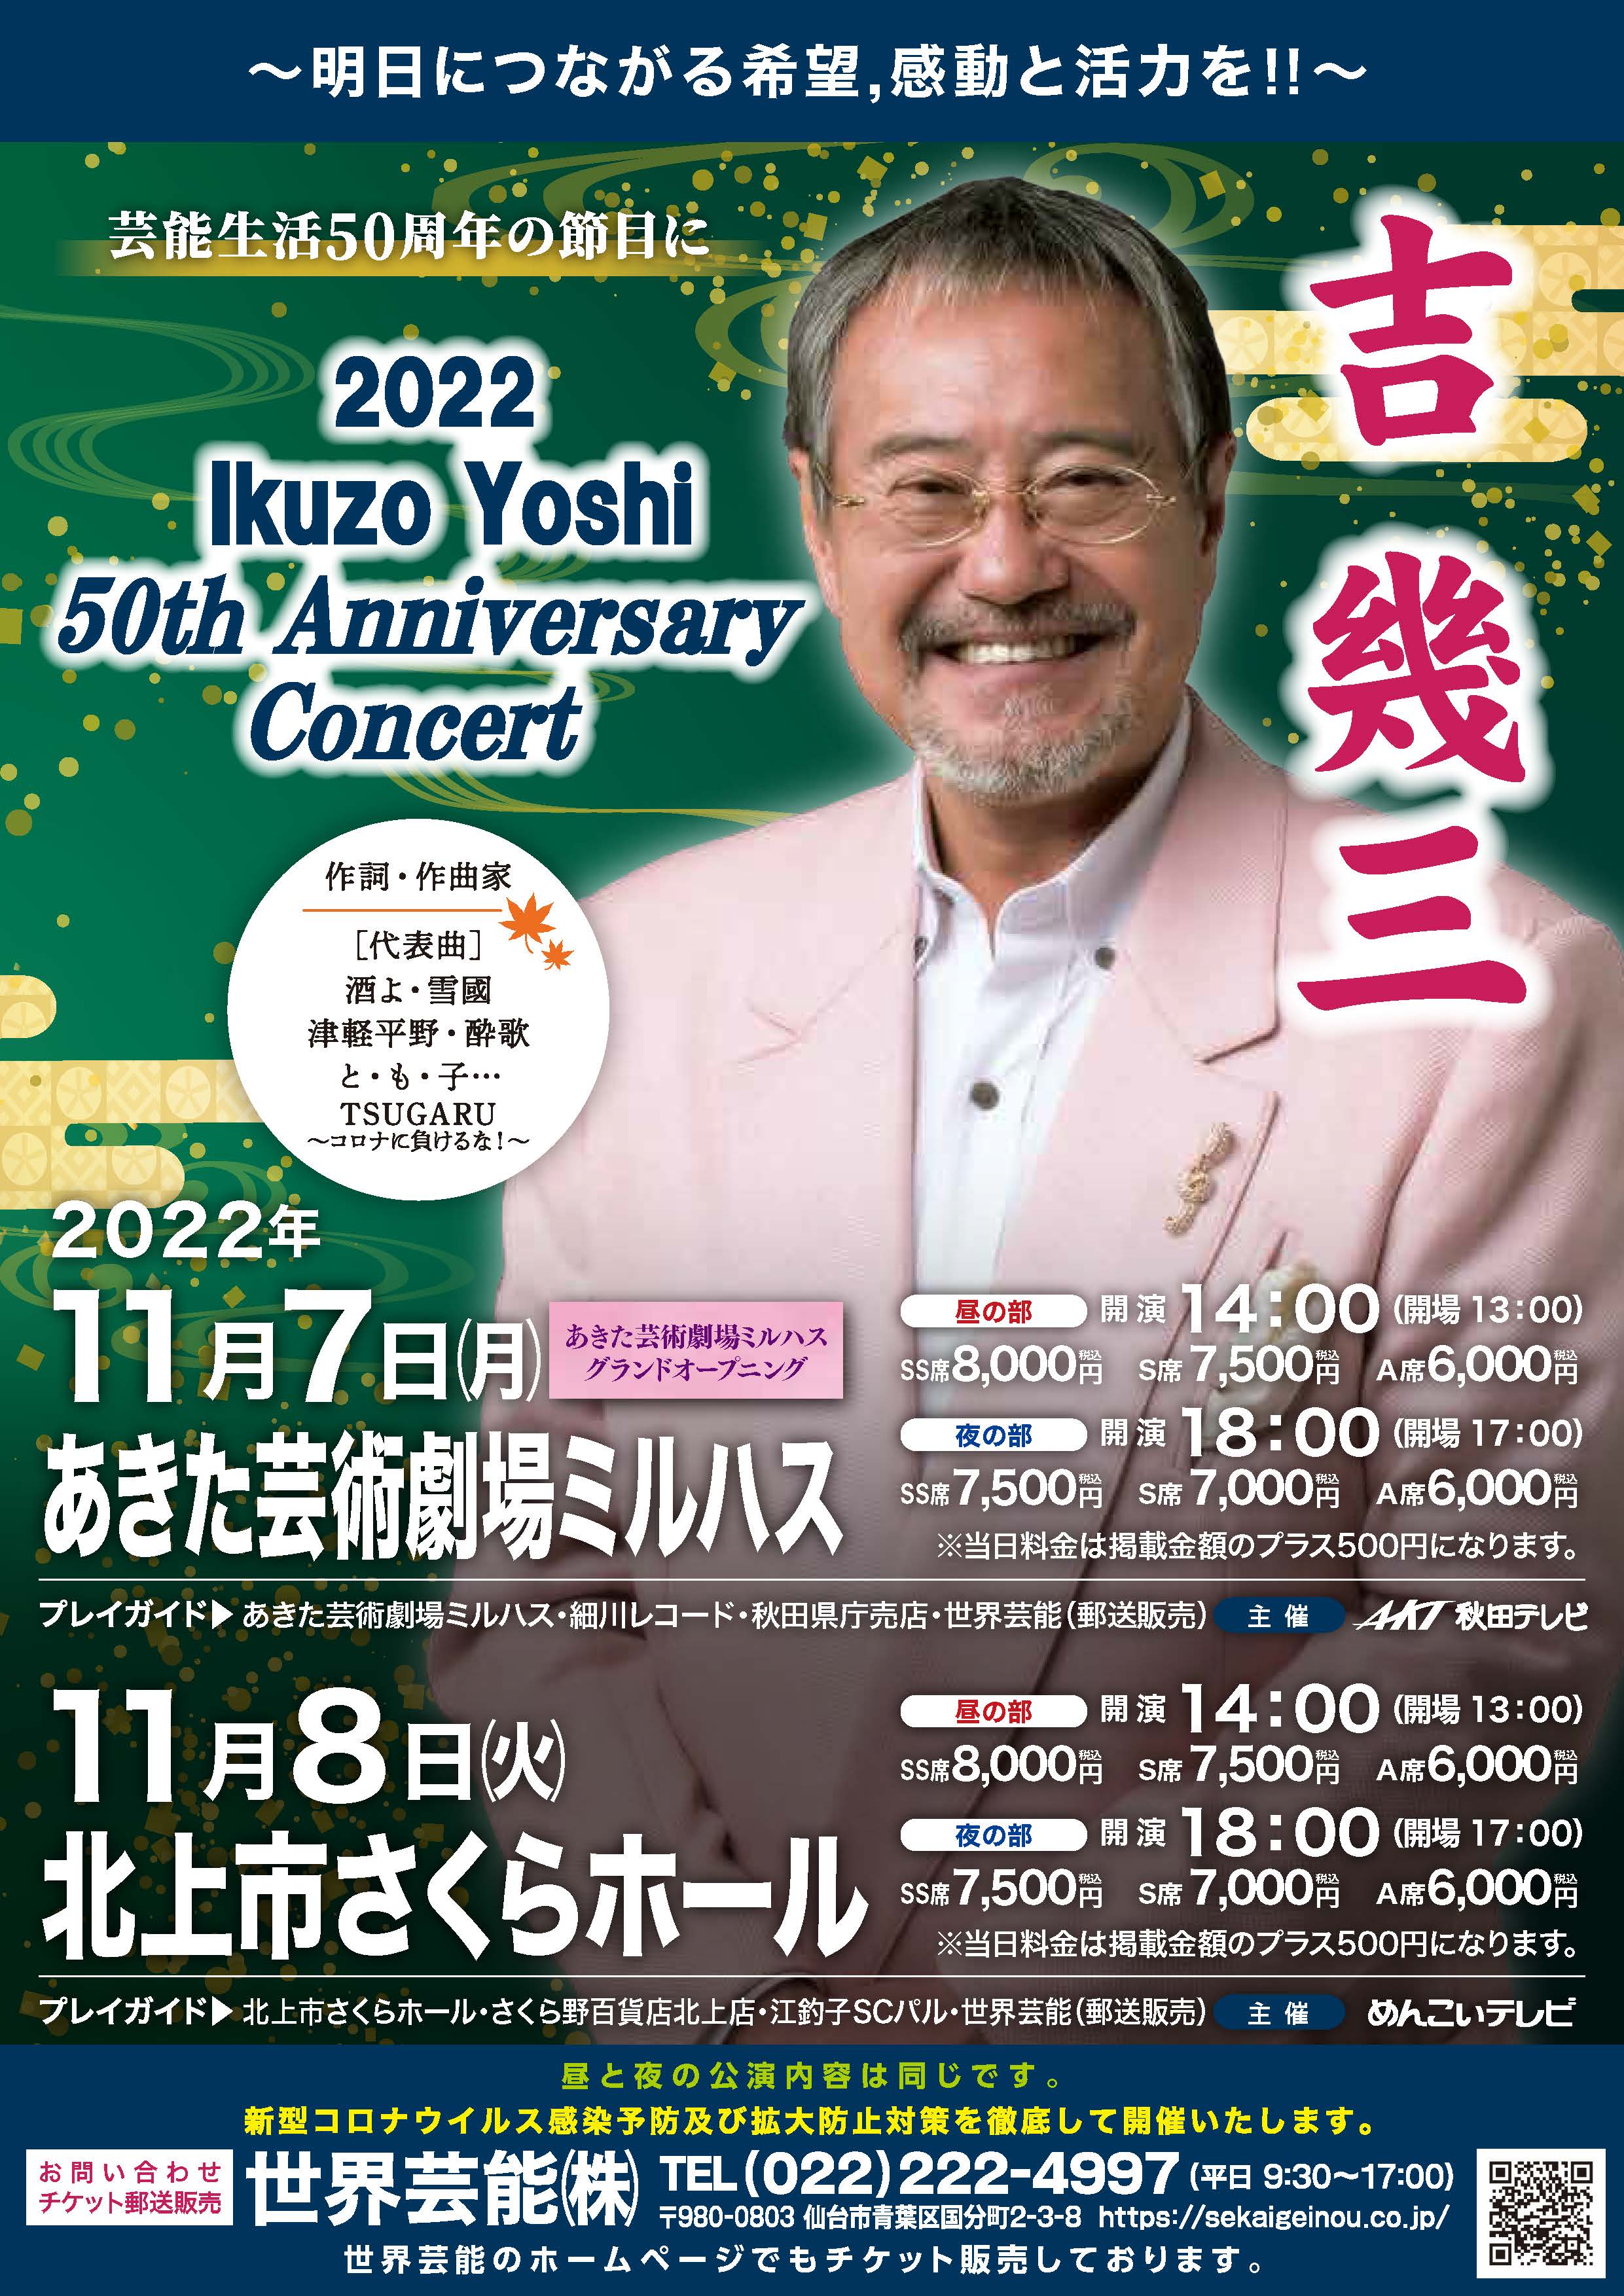 「あきた芸術劇場ミルハス グランドオープニング 吉幾三 2022 Ikuzo Yoshi 50th Anniversary Concert」のポスター